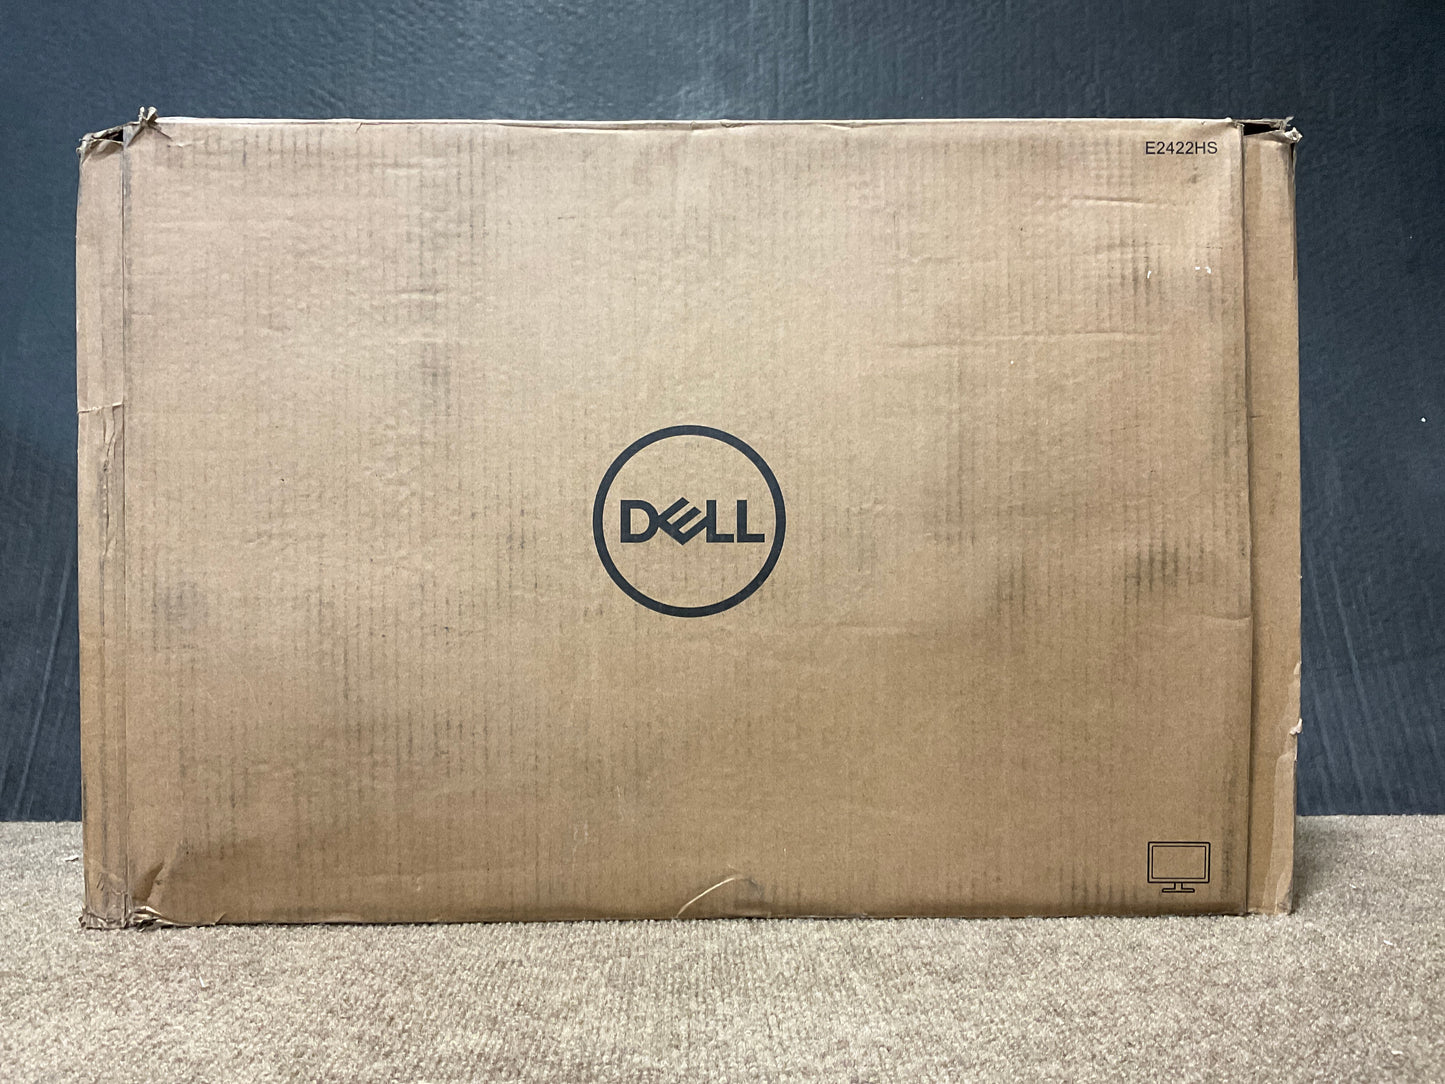 ♥ New, Open Box - Dell E2422HS 23.8"" FHD 1920 x 1080 HDMI Monitor